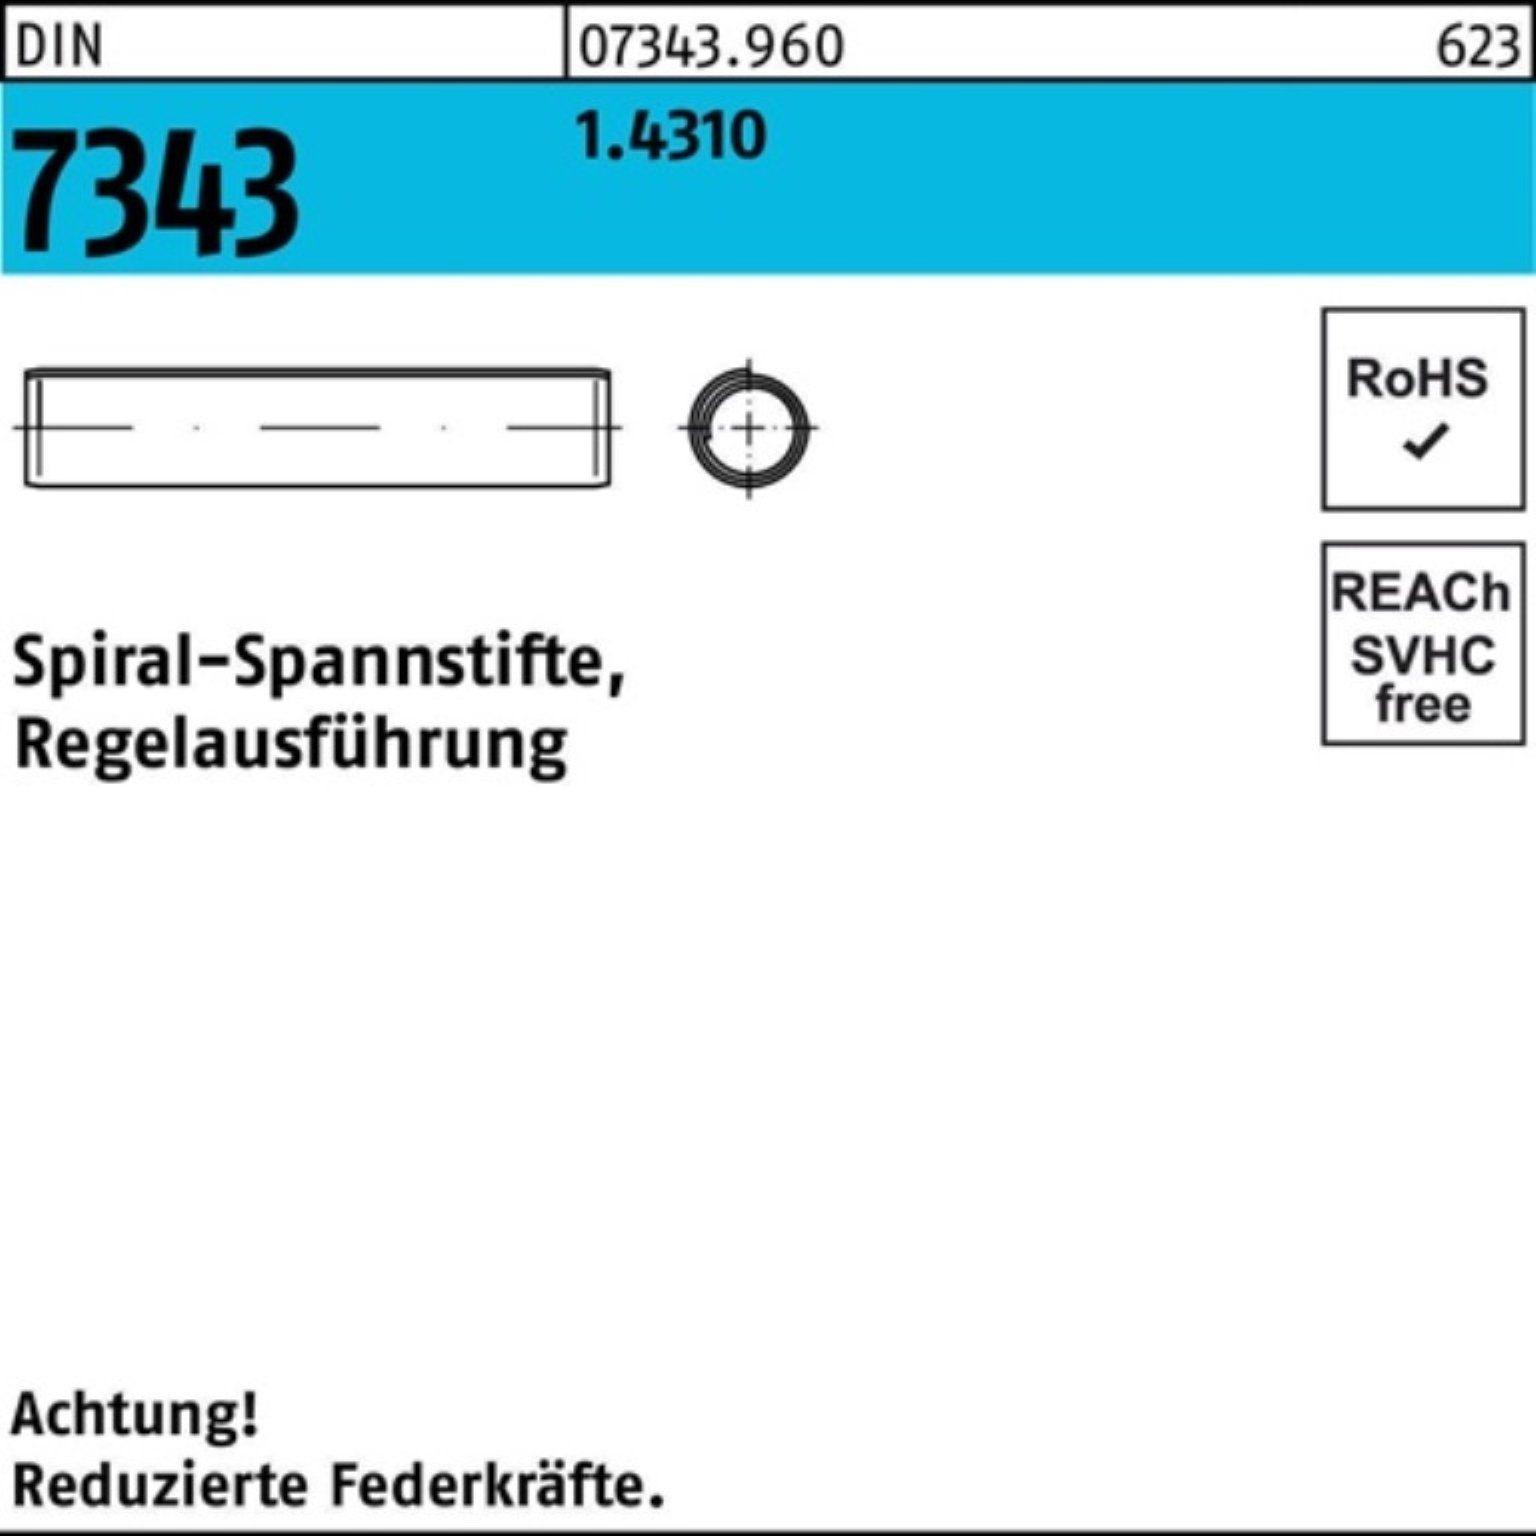 DIN 8750 32 Reyher Spannstift 7343/ISO Spiralspannstift 1000er Pack 3x 1.4310 Regelausf.